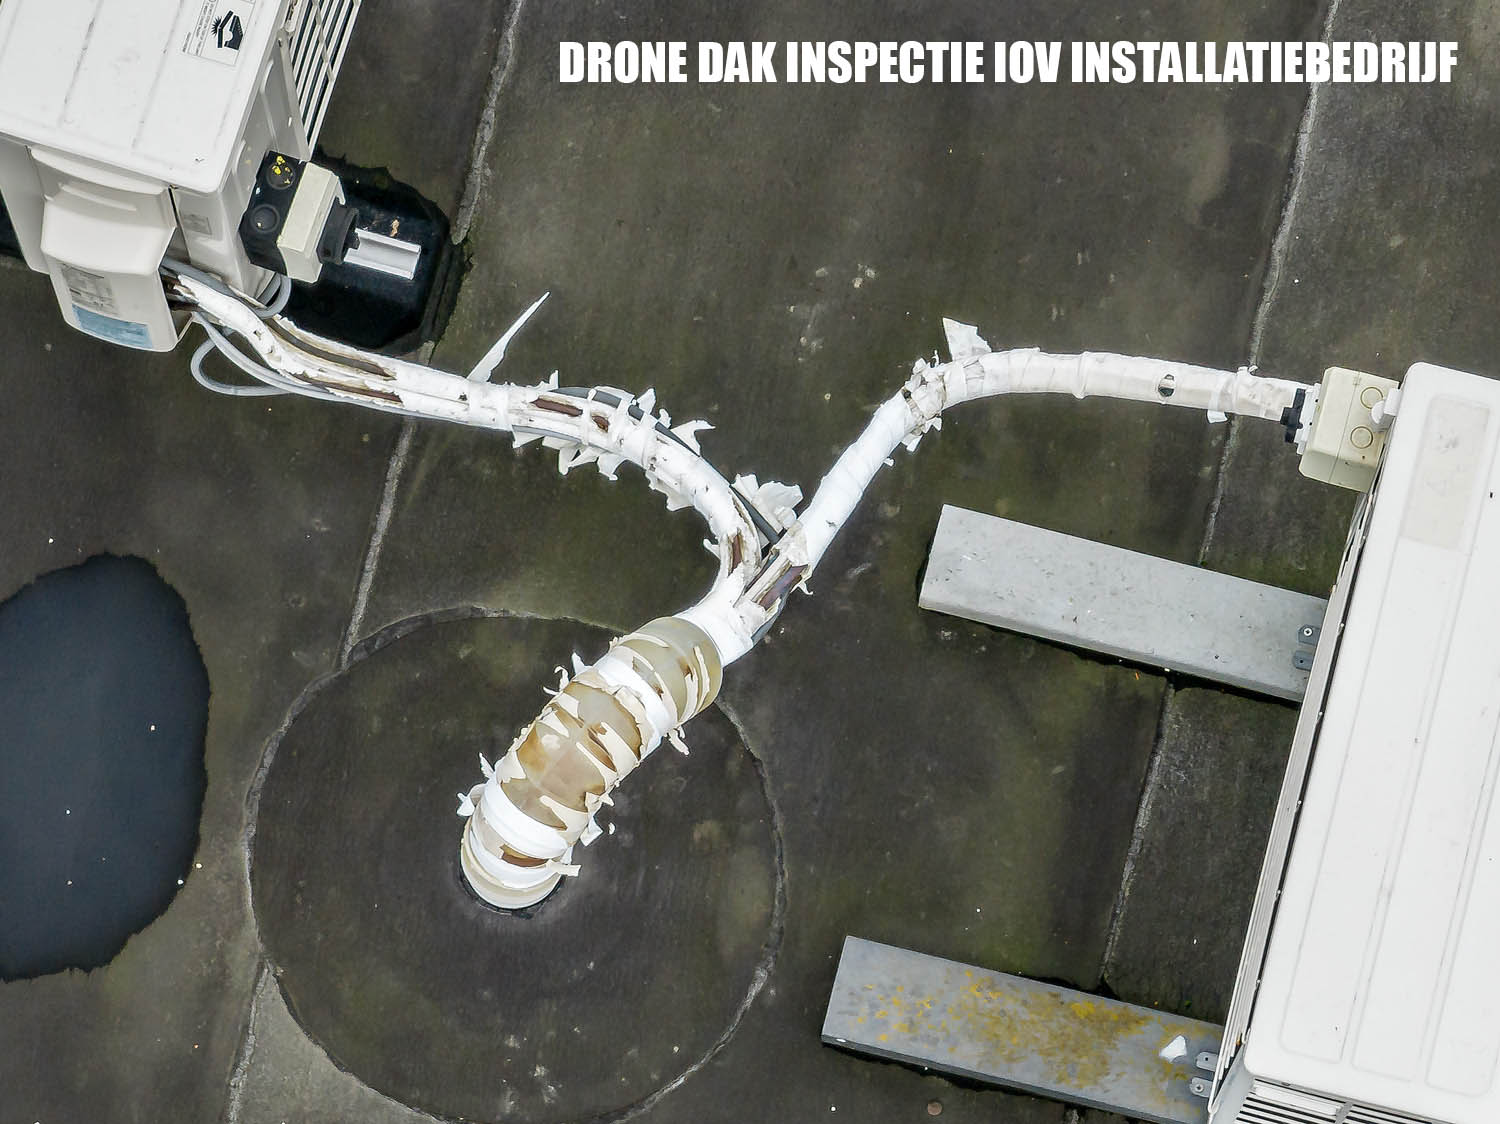 dak inspectie met drones